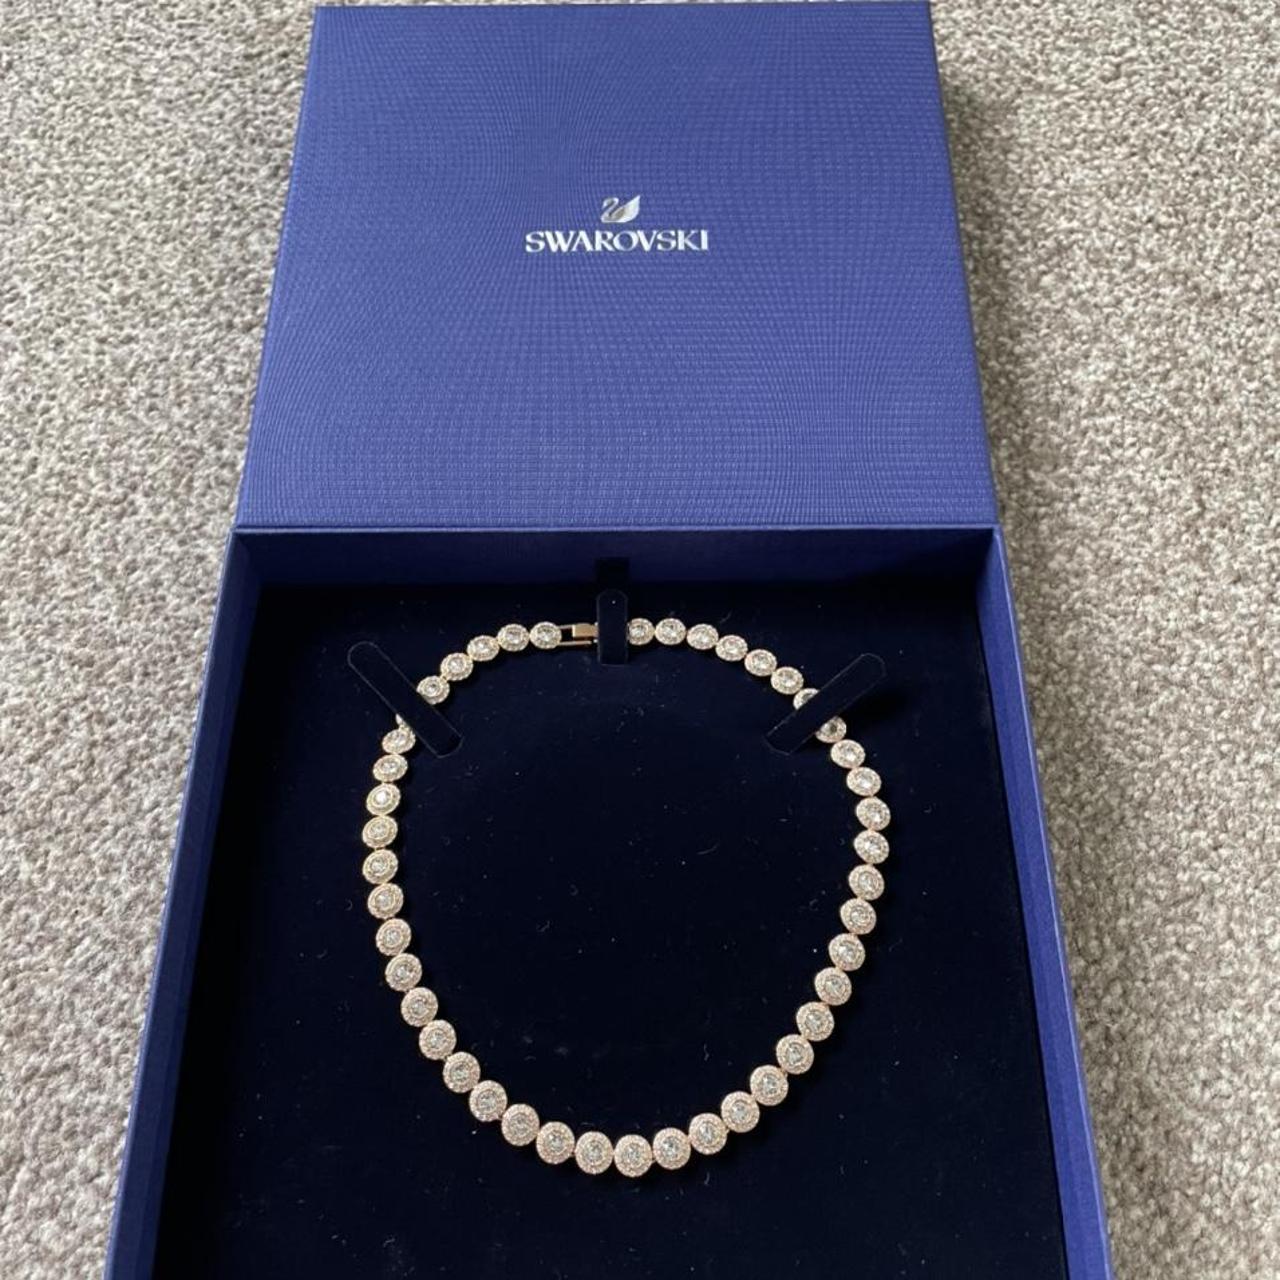 SWAROVSKI Angelic Necklace | Nordstrom jewelry, Jewelry gifts, Necklace